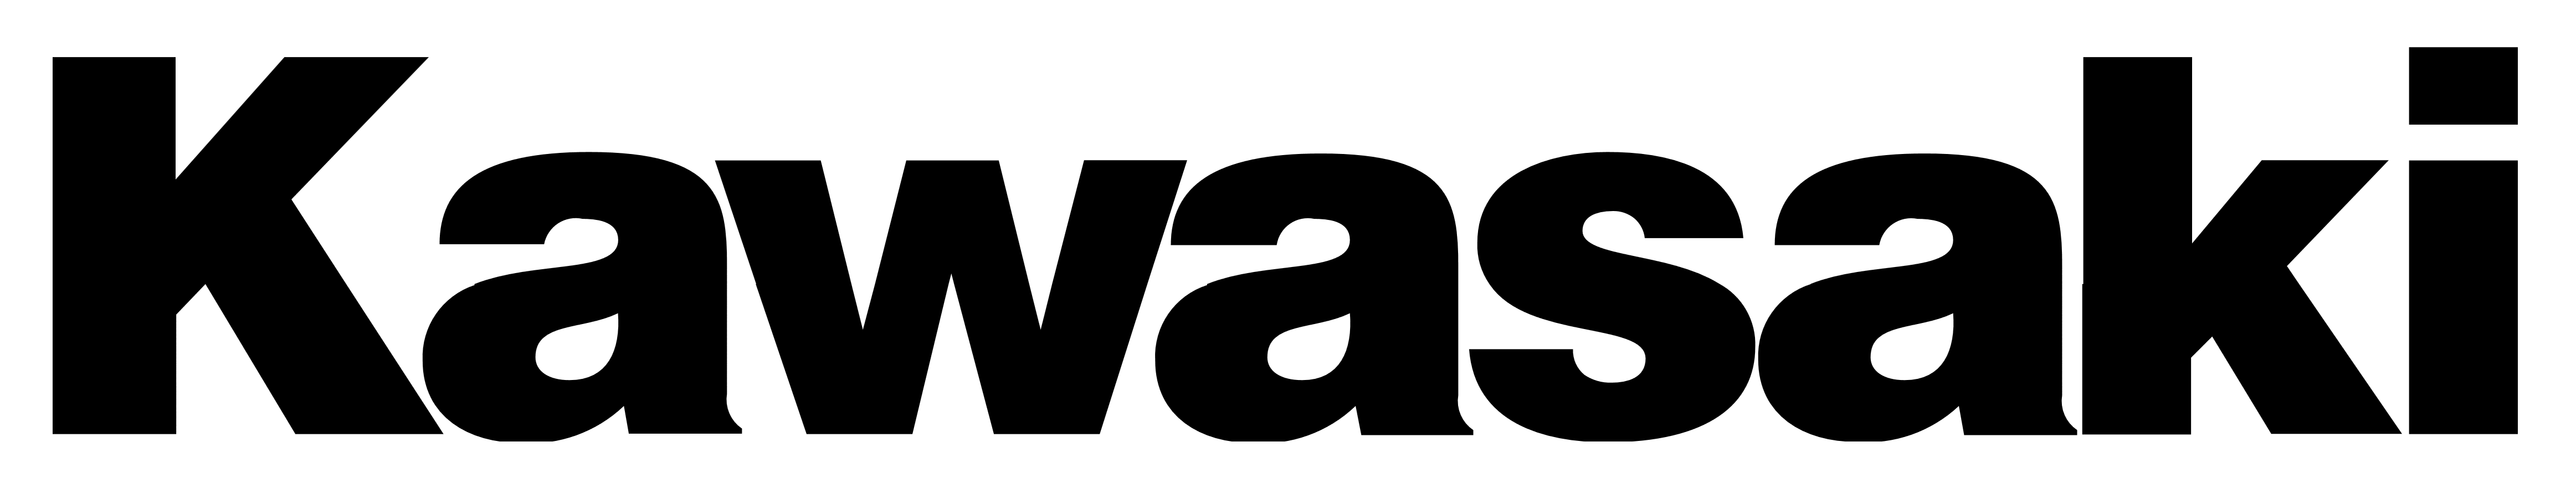 Kawasaki logo PNG Image